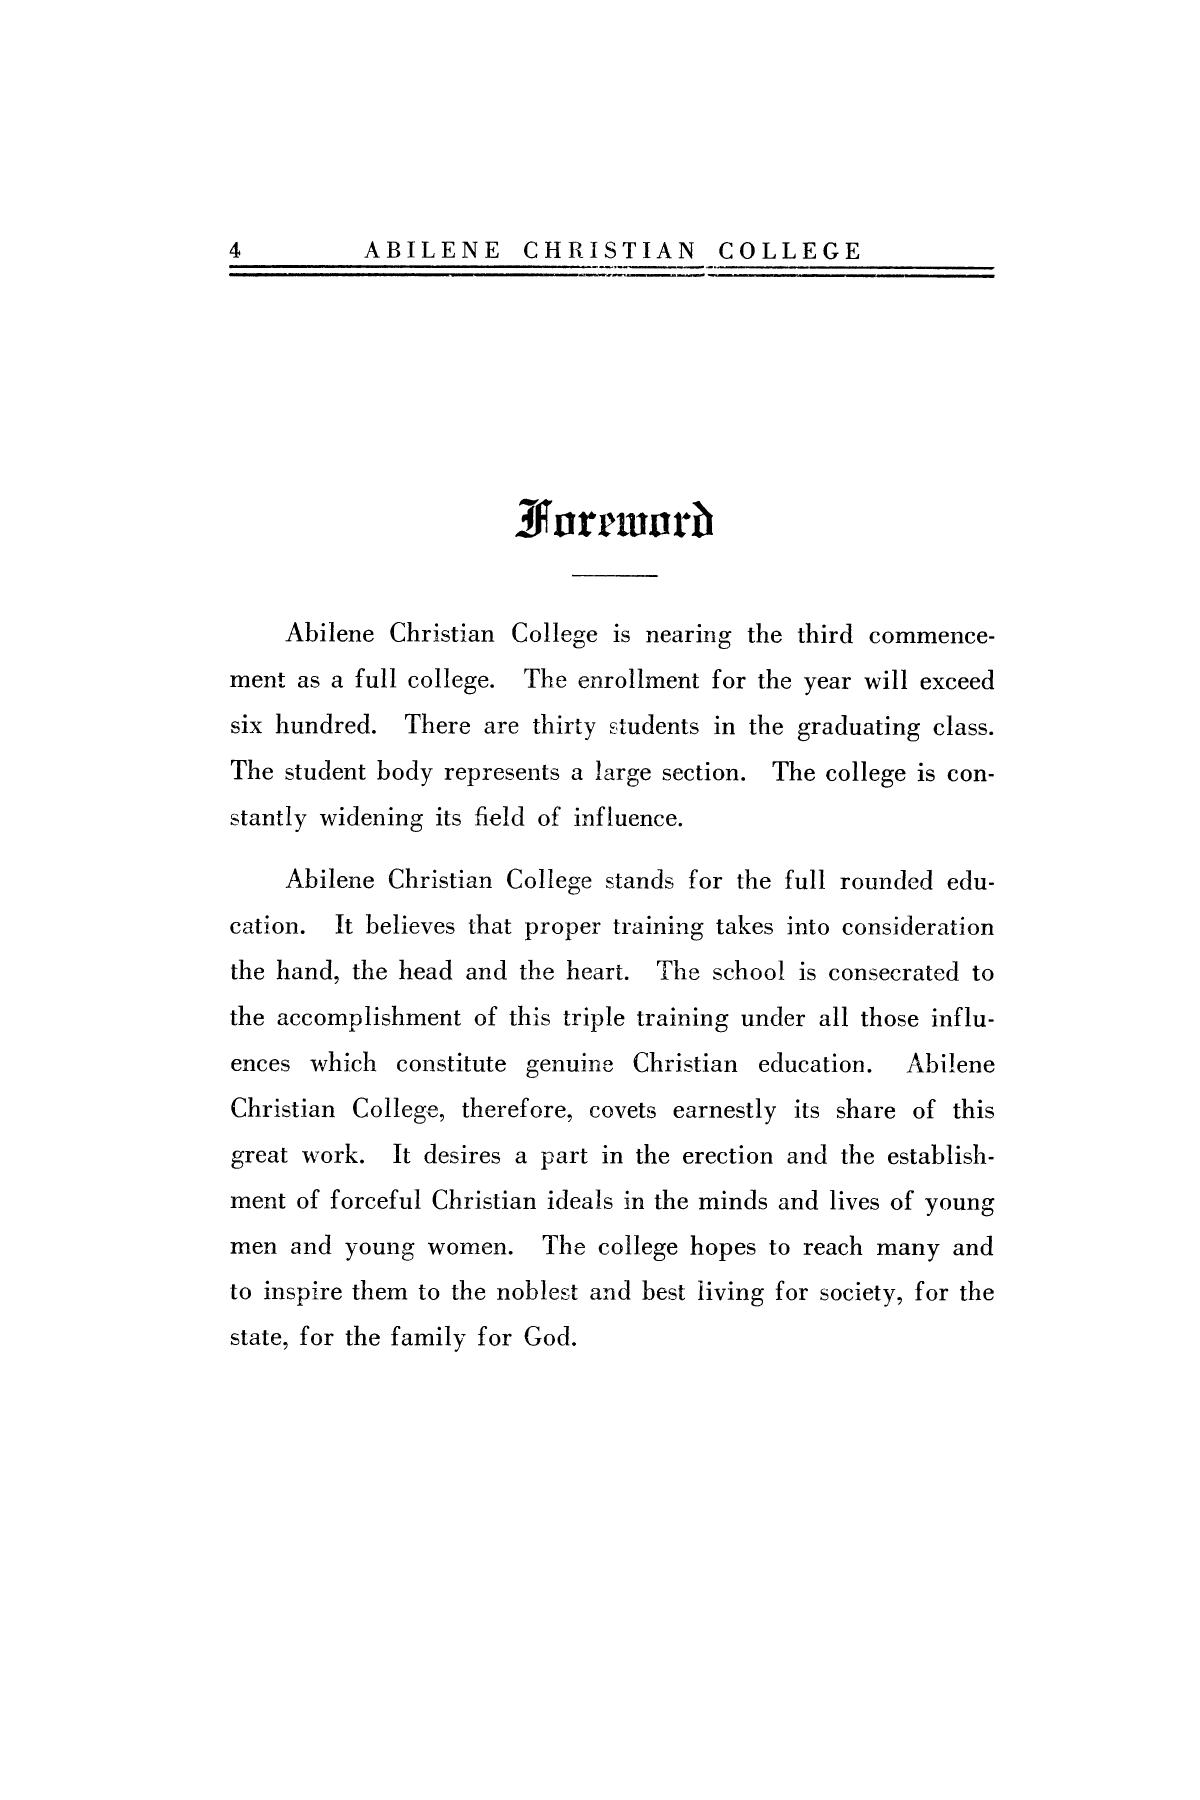 Catalog of Abilene Christian College, 1922-1923
                                                
                                                    4
                                                